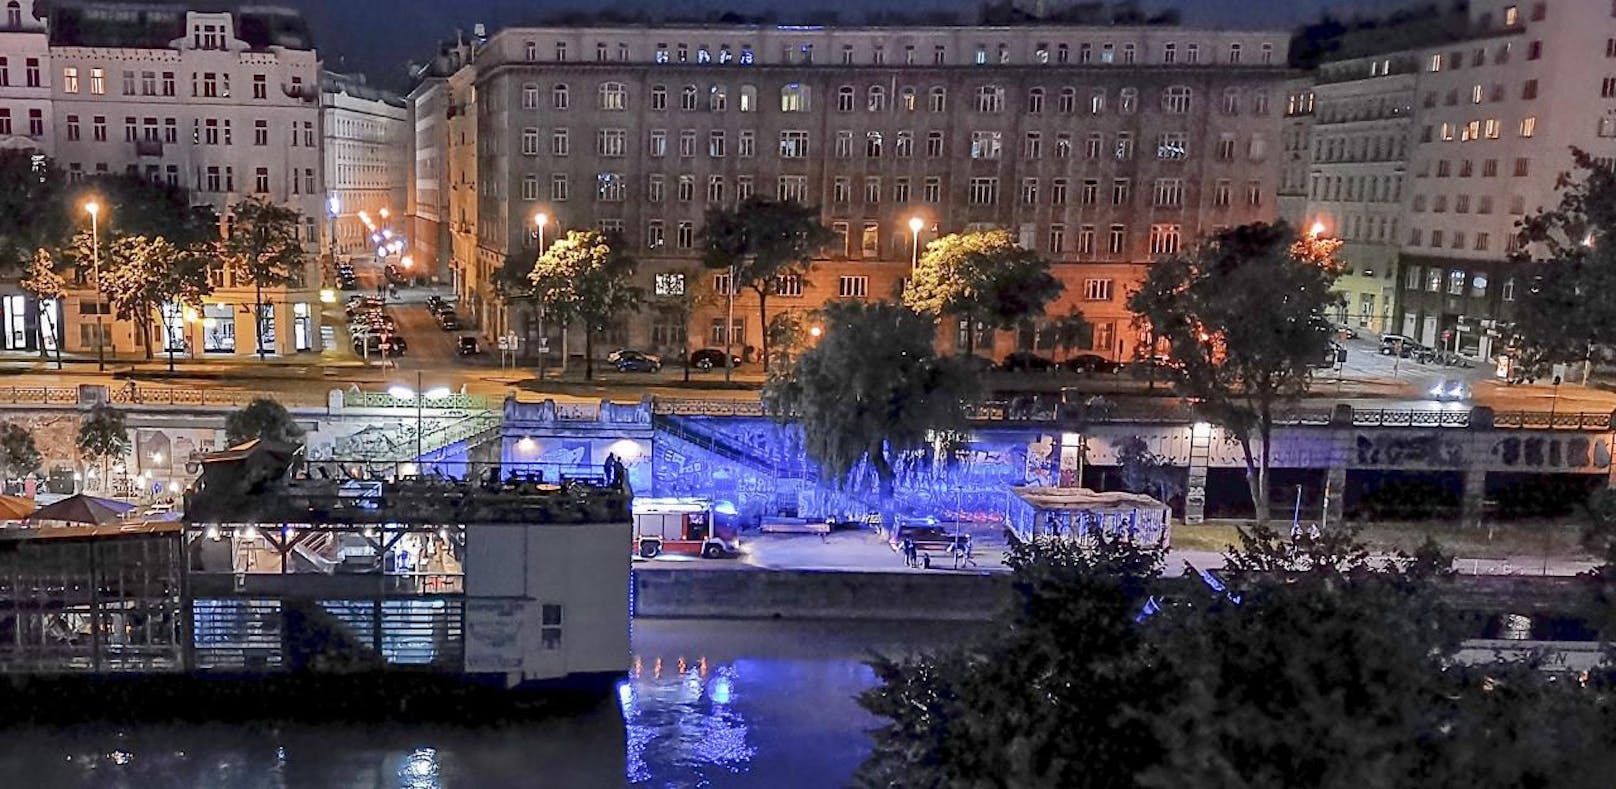 Rettungseinsatz in der Nacht auf Dienstag am Donaukanal!